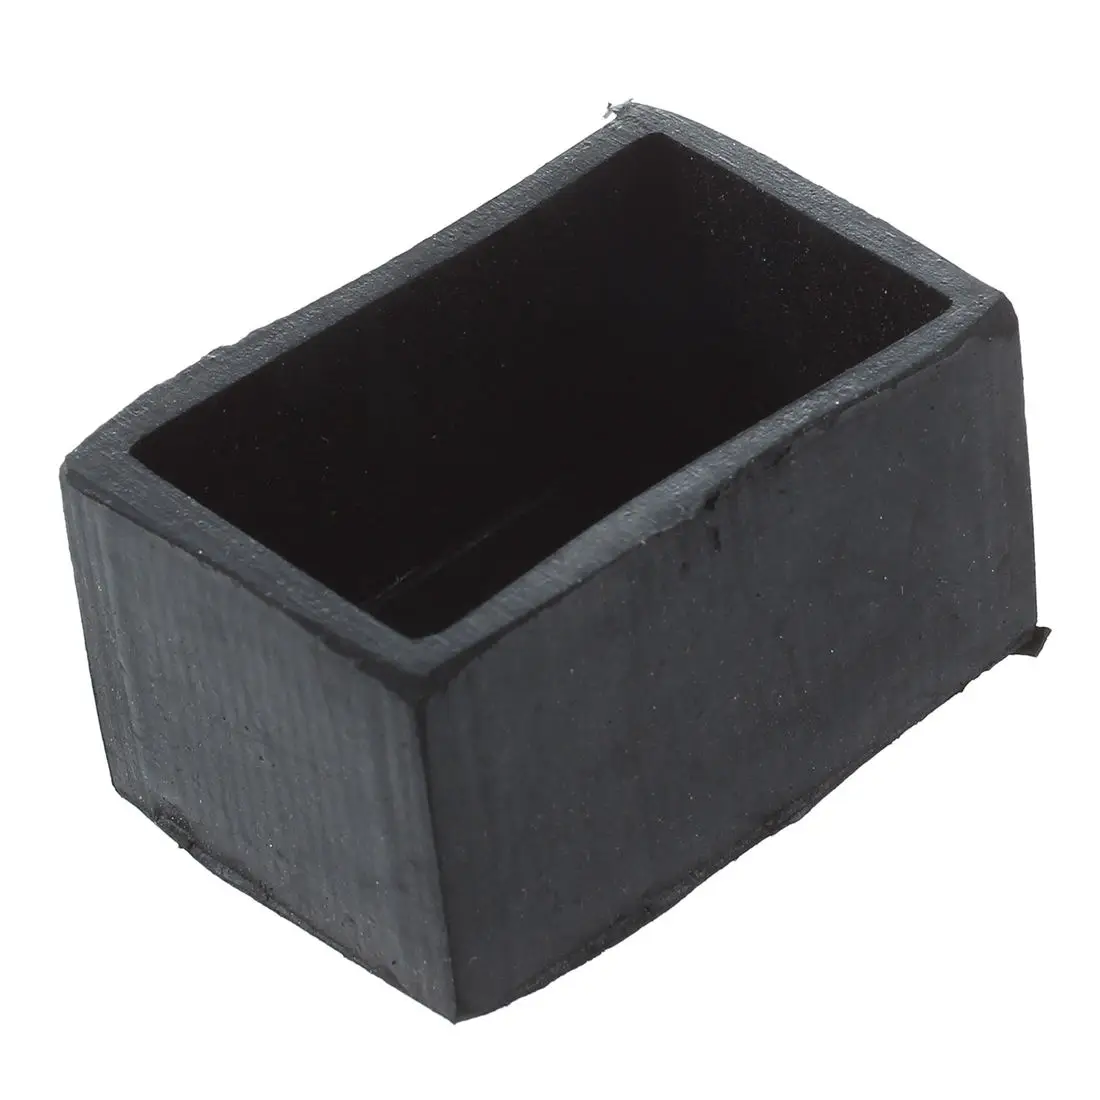 Столешница для стула черная резиновая прямоугольная 25 мм x 38 мм Защитная ножка